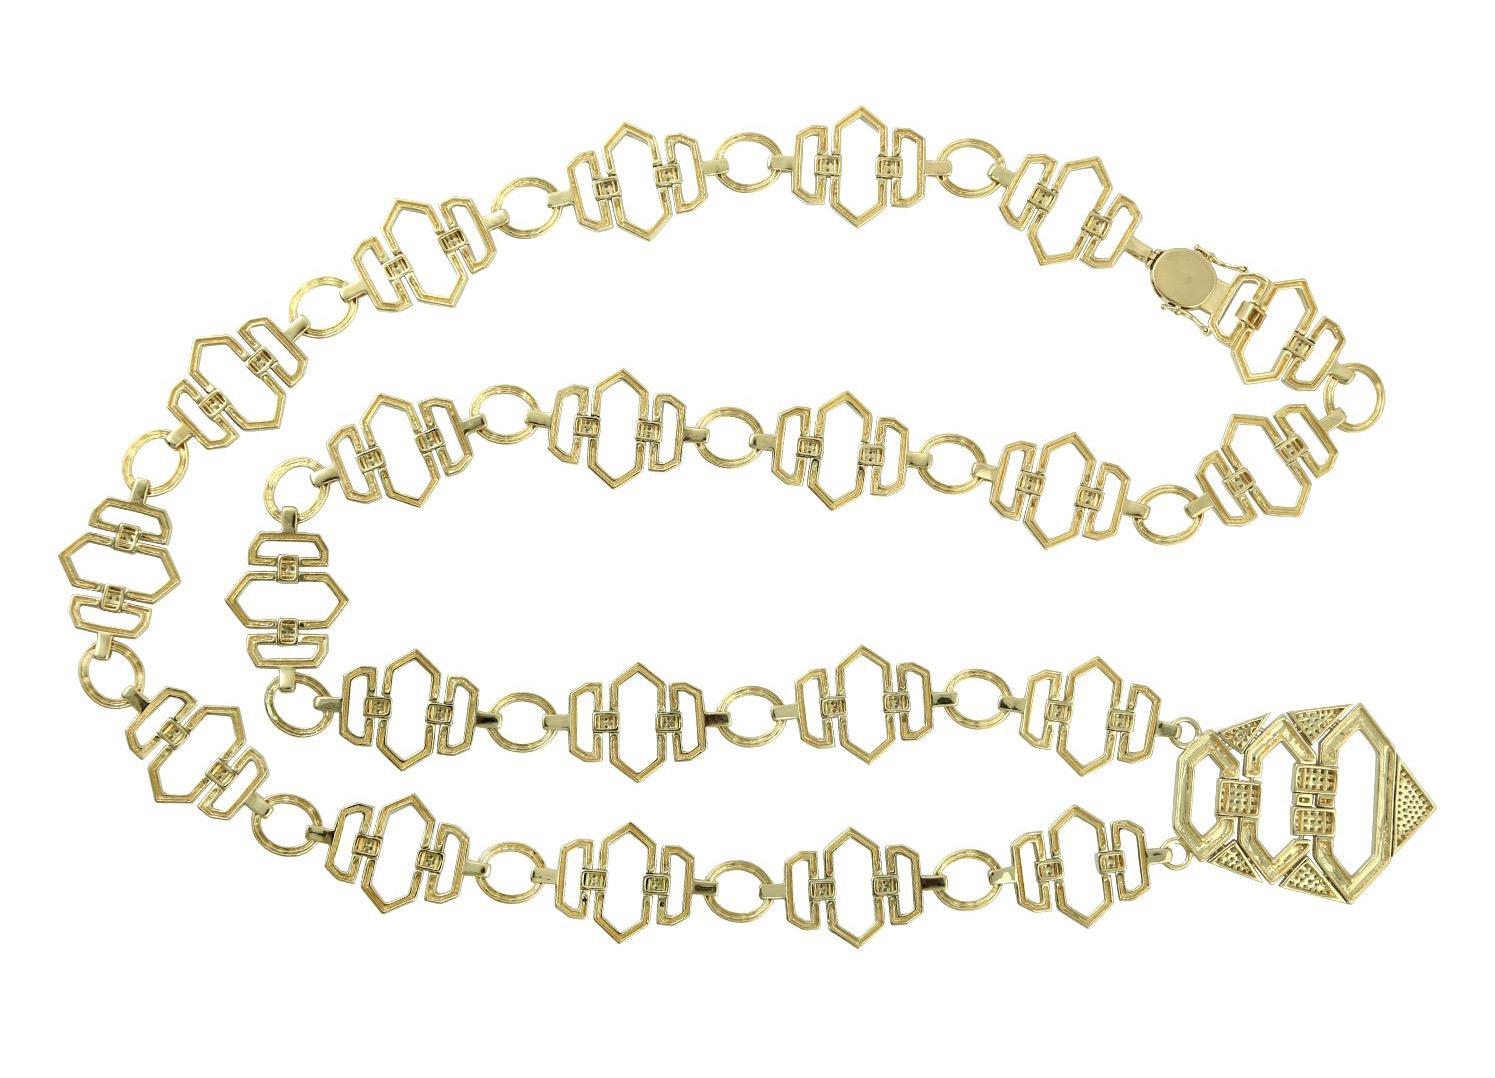  Eine atemberaubende Diamant-Emaille-Halskette ist handgefertigt aus 18 Karat Gold und 3,78 Karat Diamanten.

FOLGEN  MEGHNA JEWELS Storefront, um die neueste Kollektion und exklusive Stücke zu sehen.  Meghna Jewels ist stolz darauf, Top-Anbieter